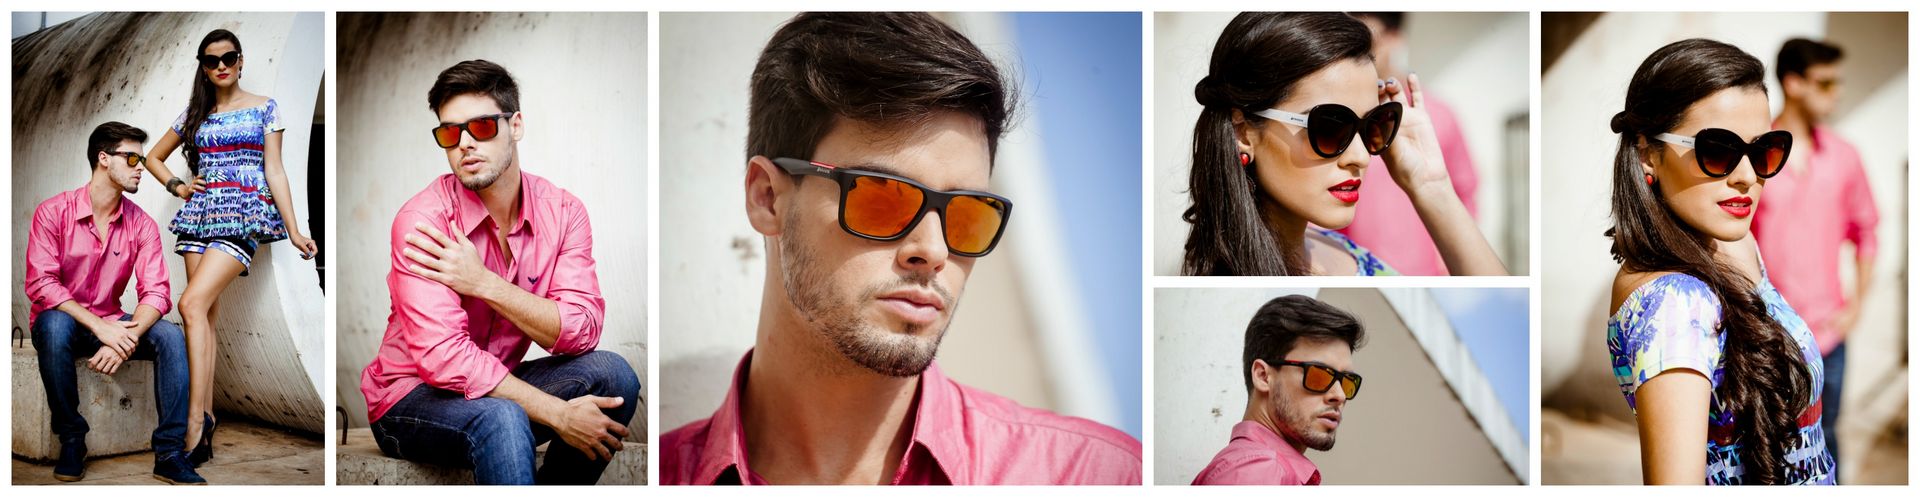 Franquia Draker Sunglasses - Coleção de Óculos